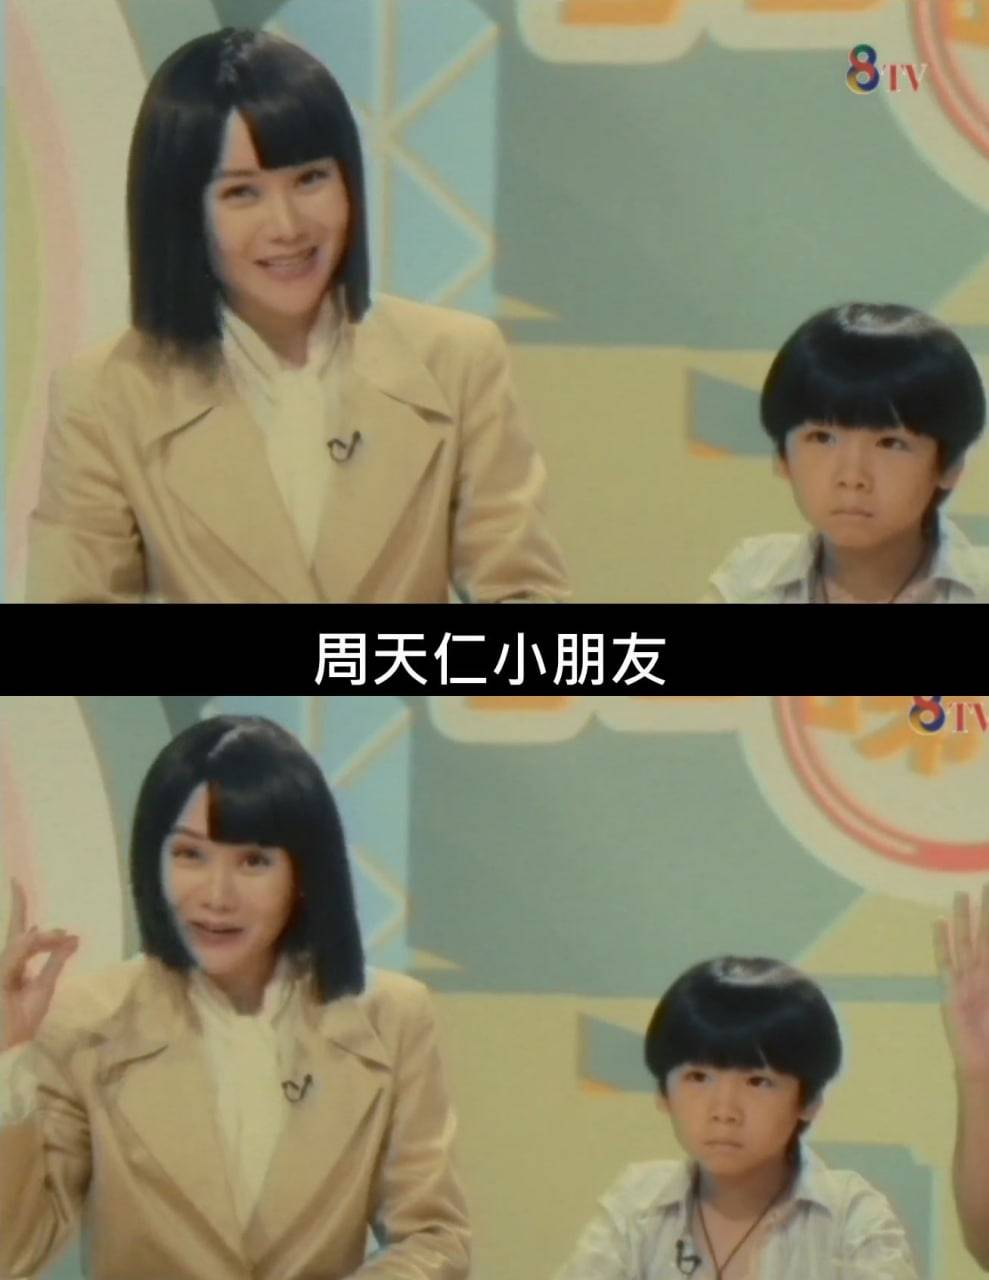 一秒拳王7大看點 譚杏藍在電影開段客串「睇真啲」角色扮演大姐明。